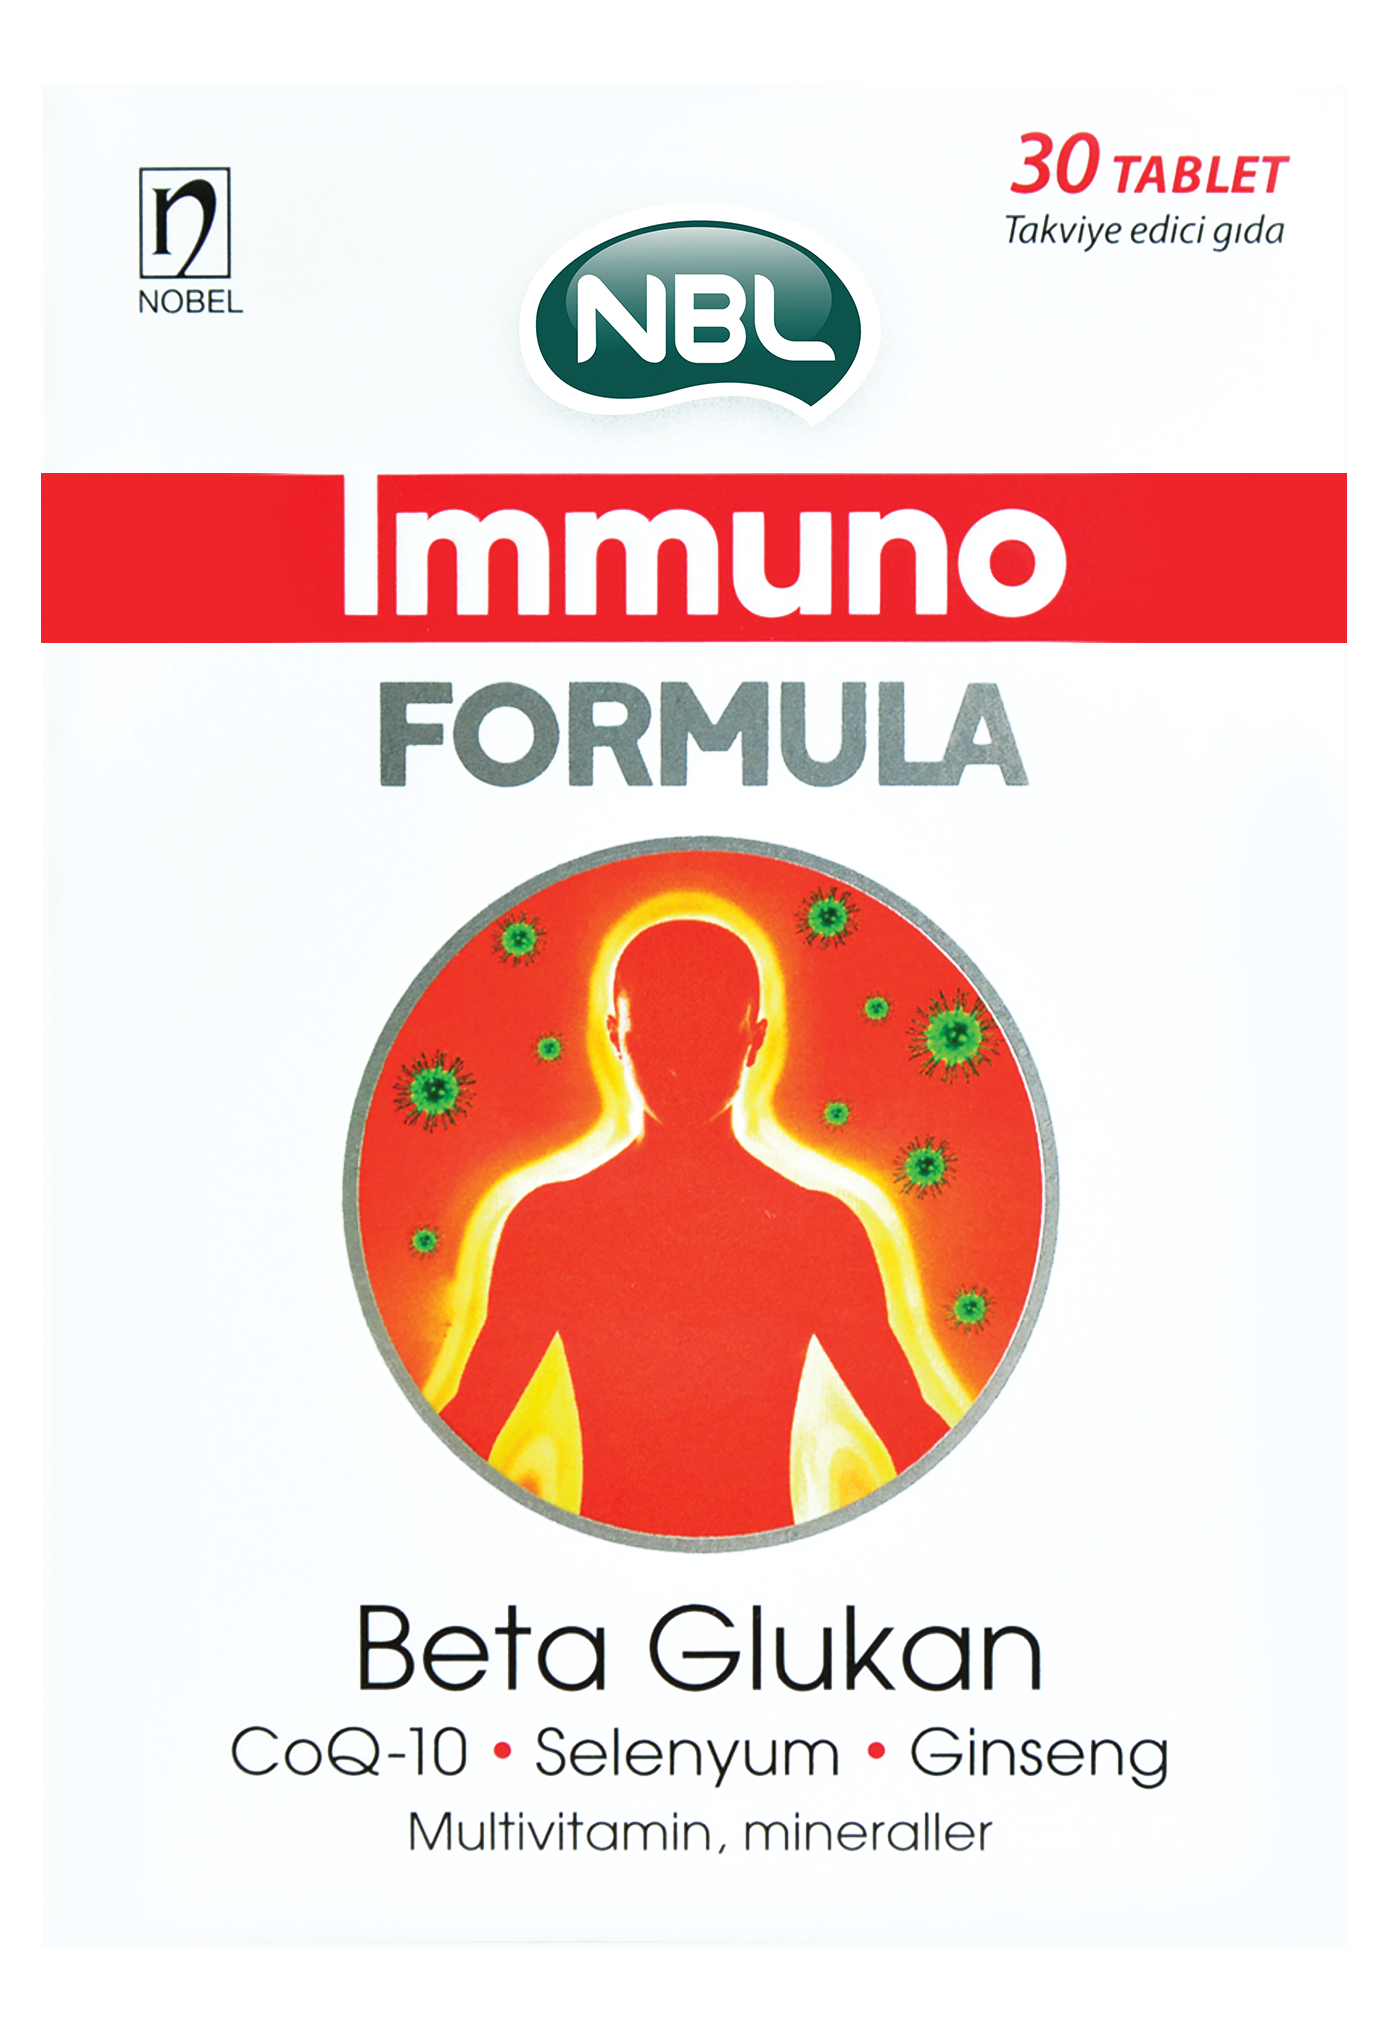 იმუნო ფორმულა / NBL Immuno Formula